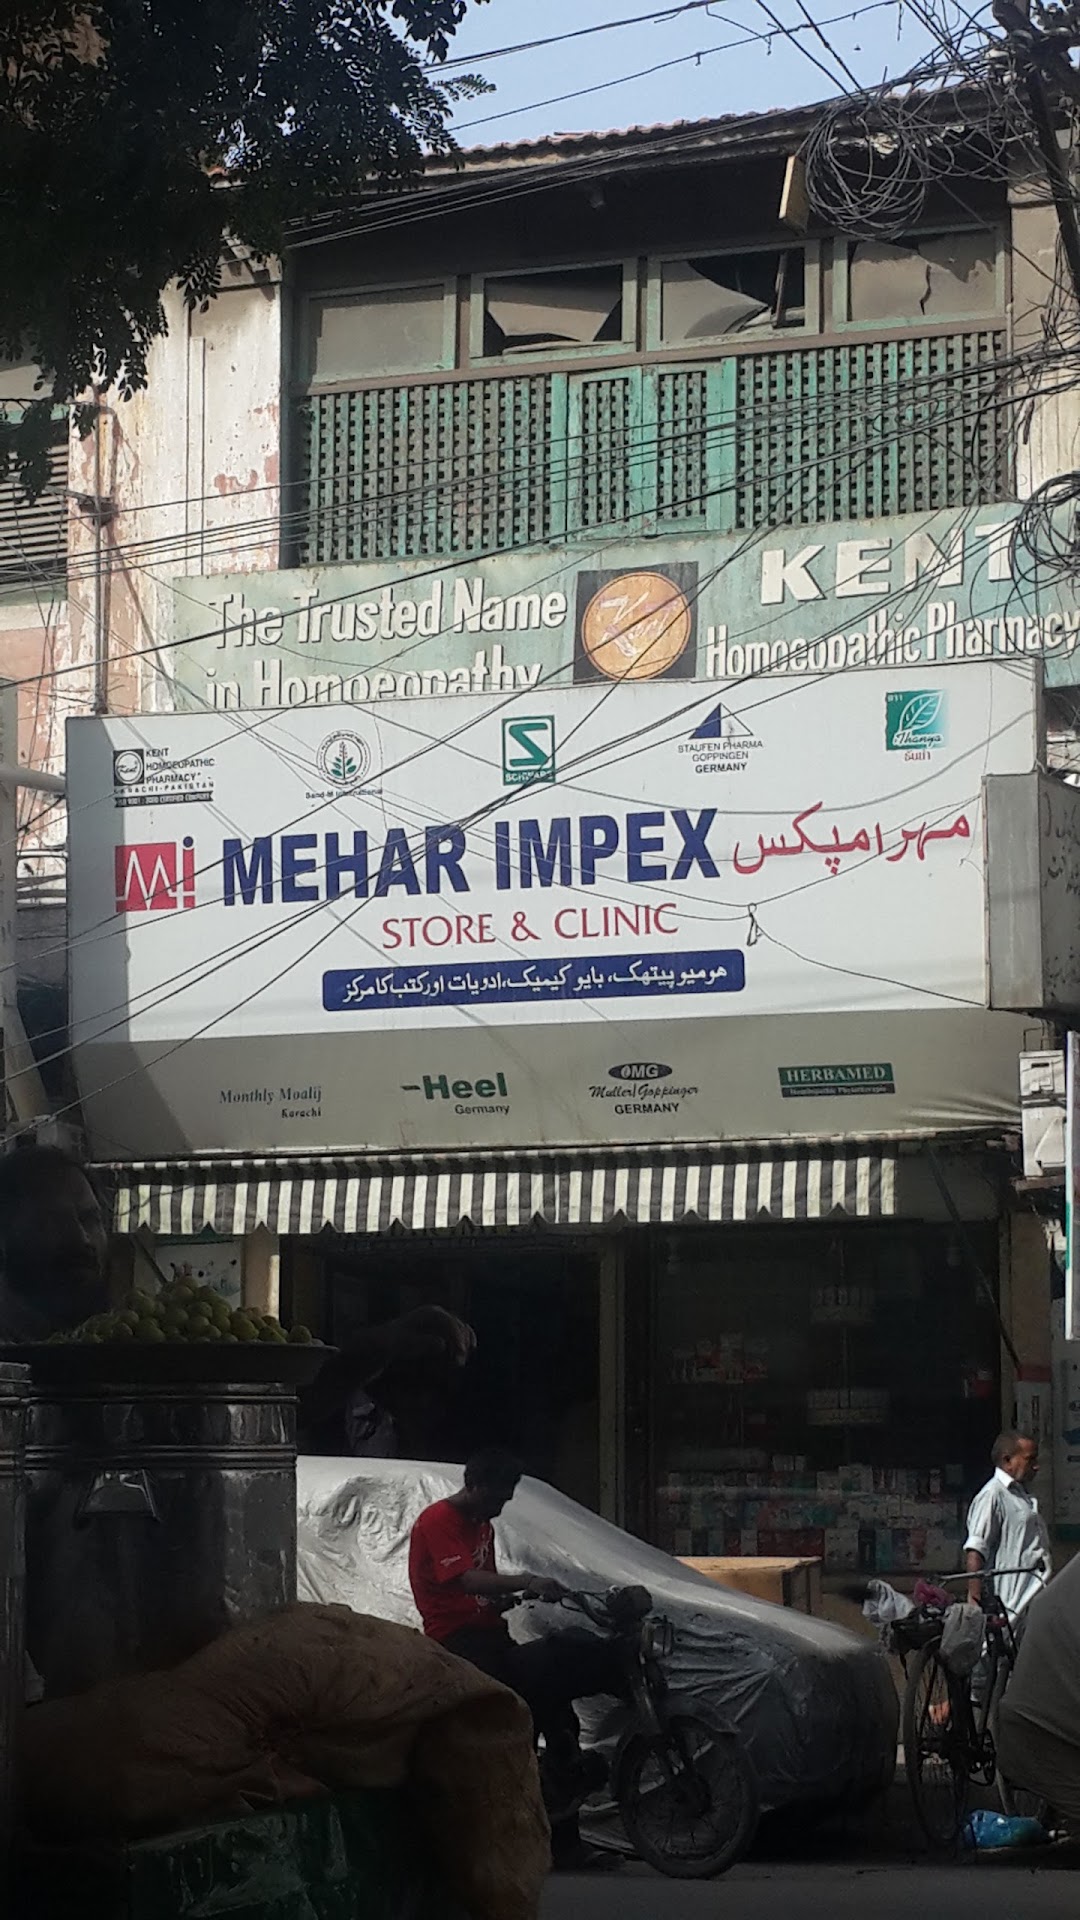 Mehar Impex